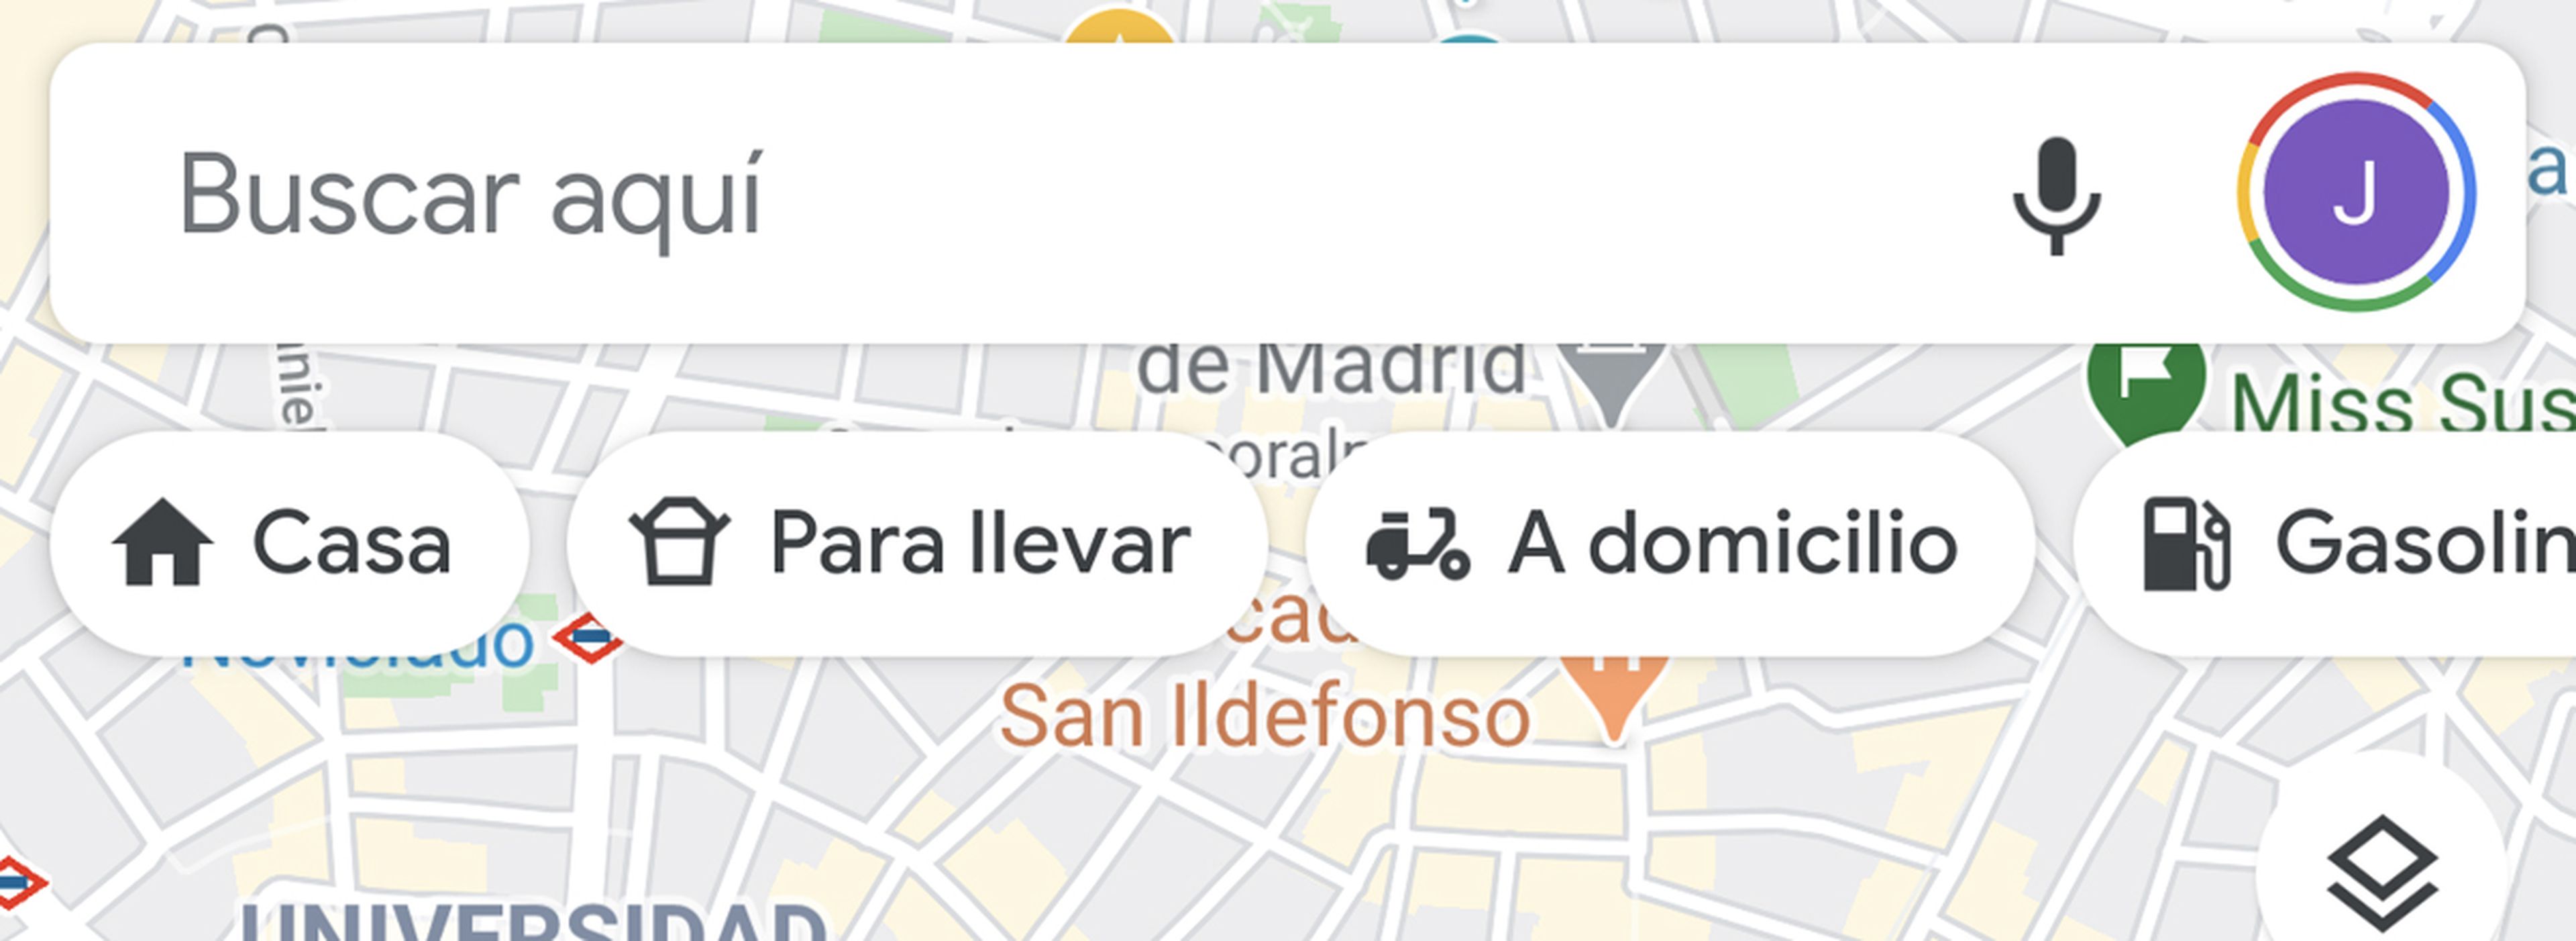 Google Maps a domicilio